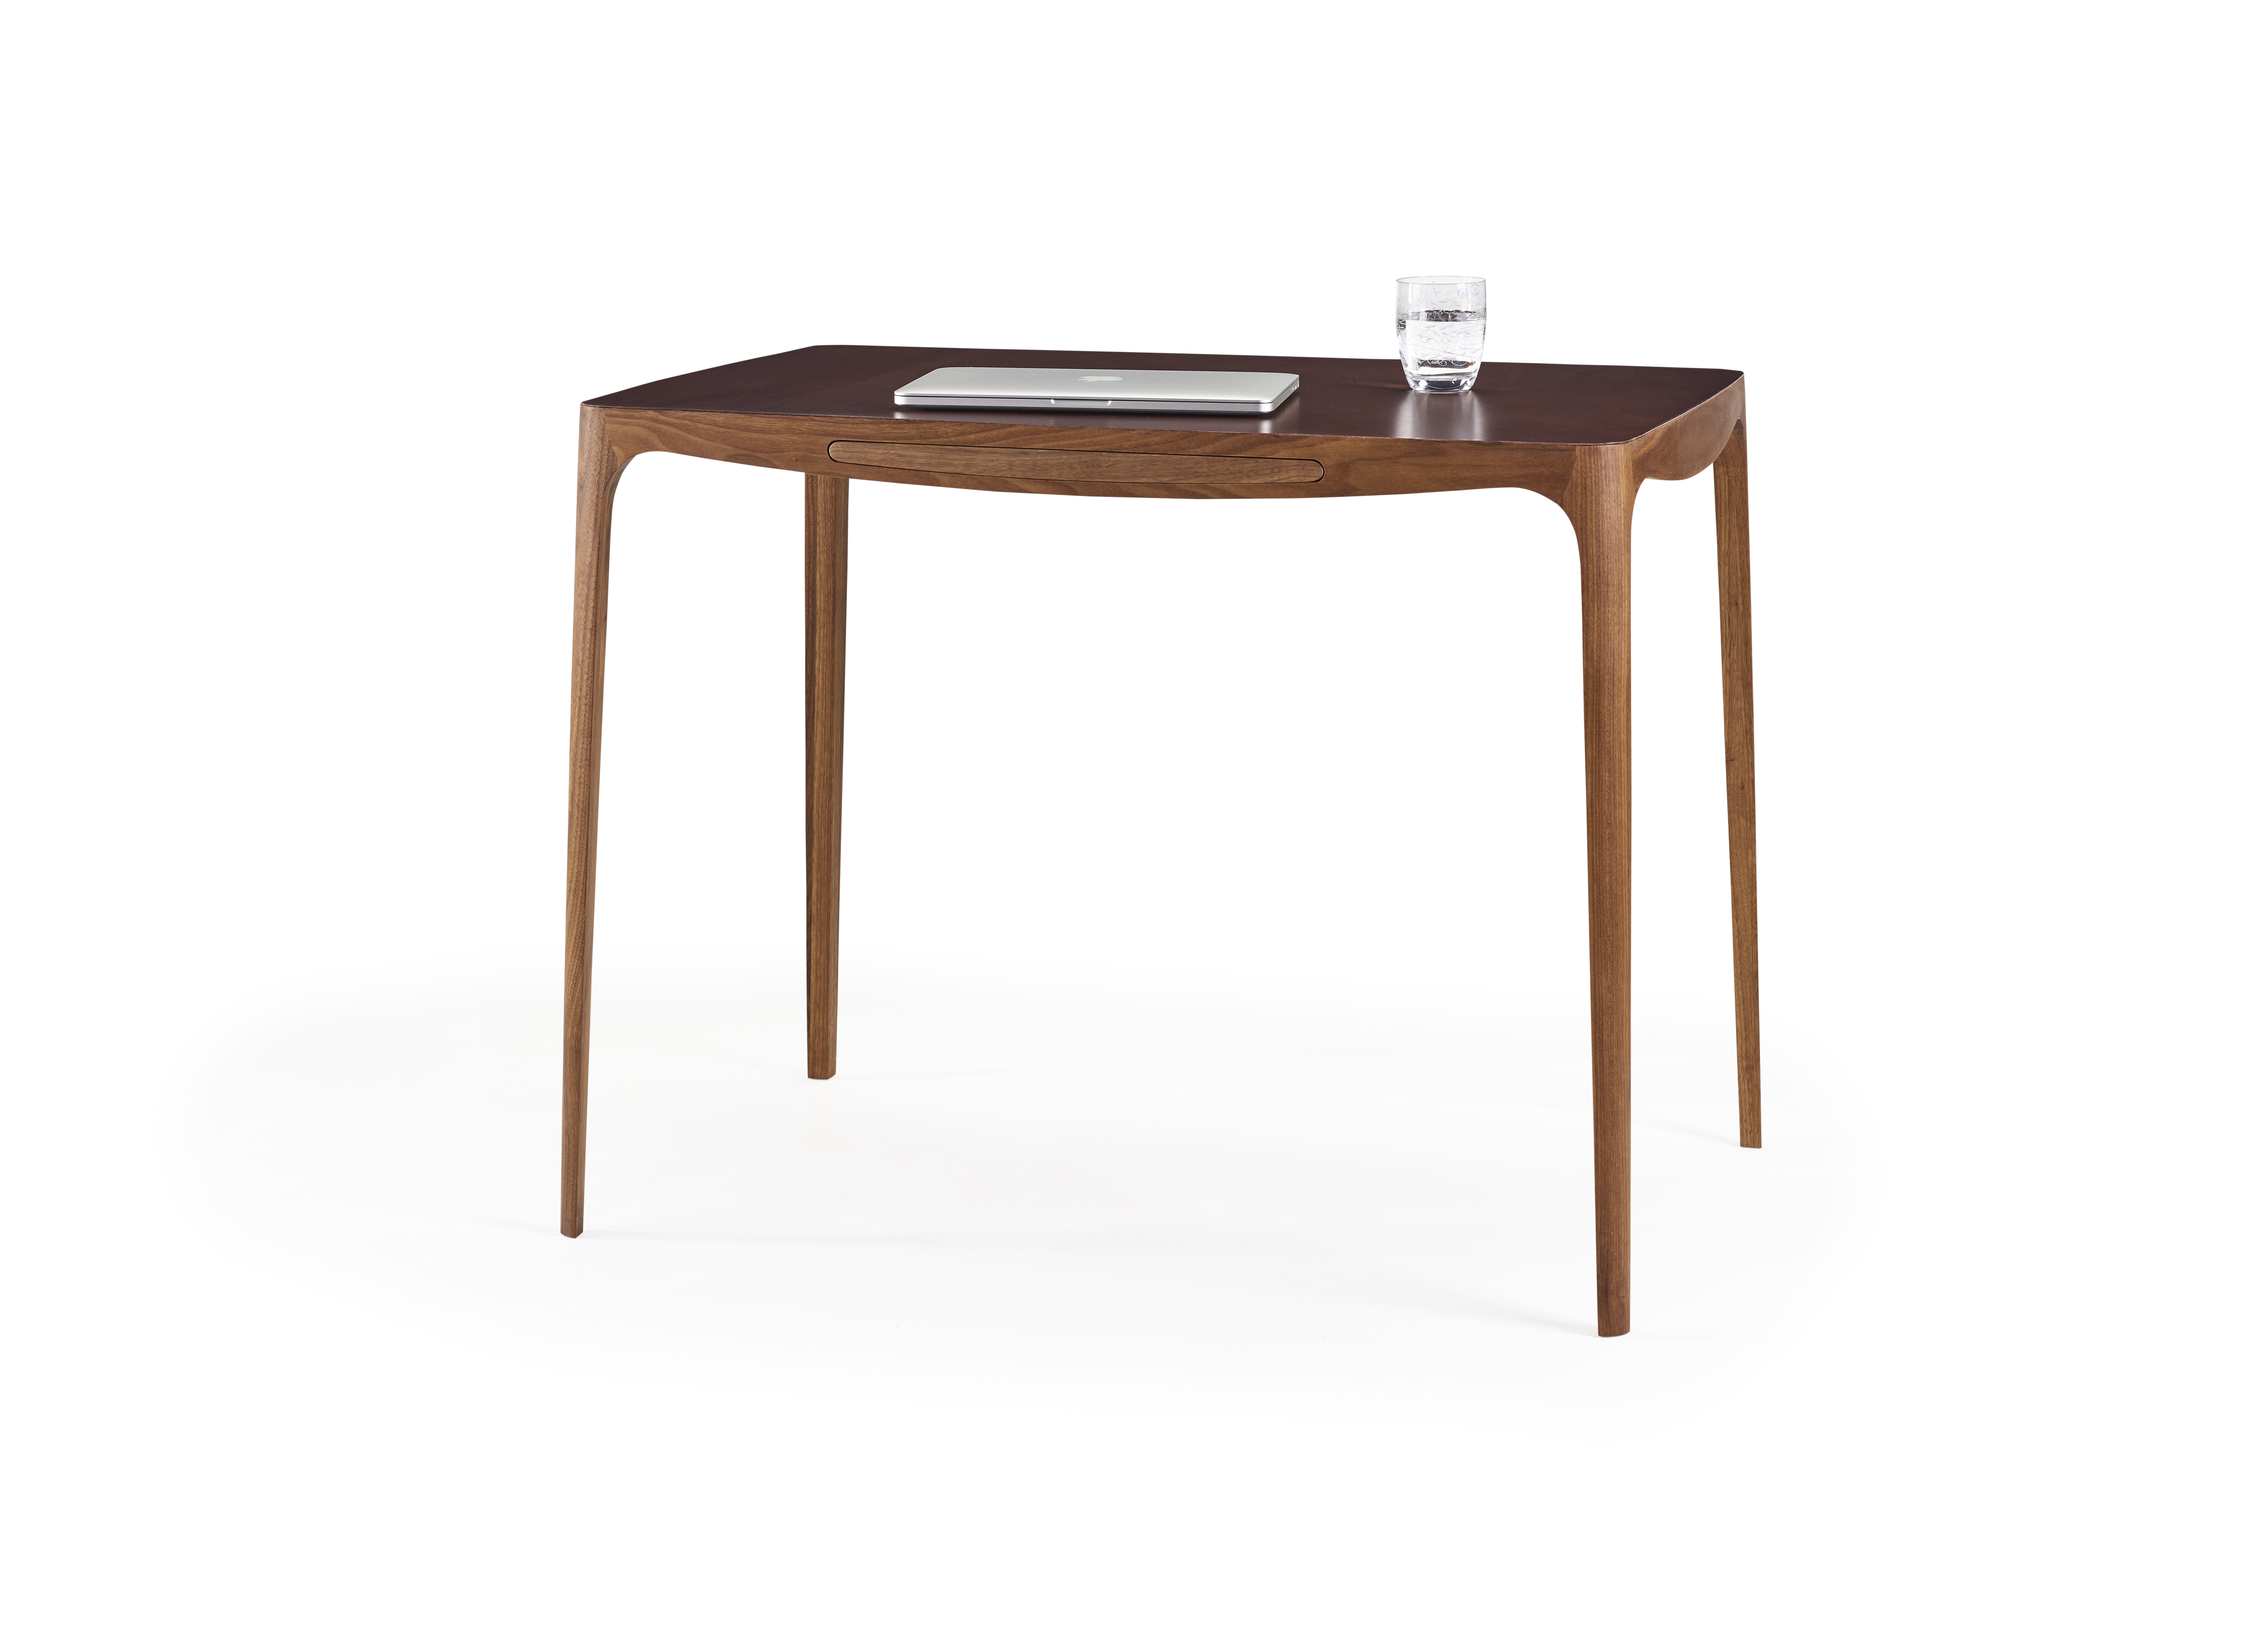 Her ses Naver Collections nyeste skrivebord, som var nomineret til Bo Bedres Dansk Design Award 2019 i kategorien Årets møbel.